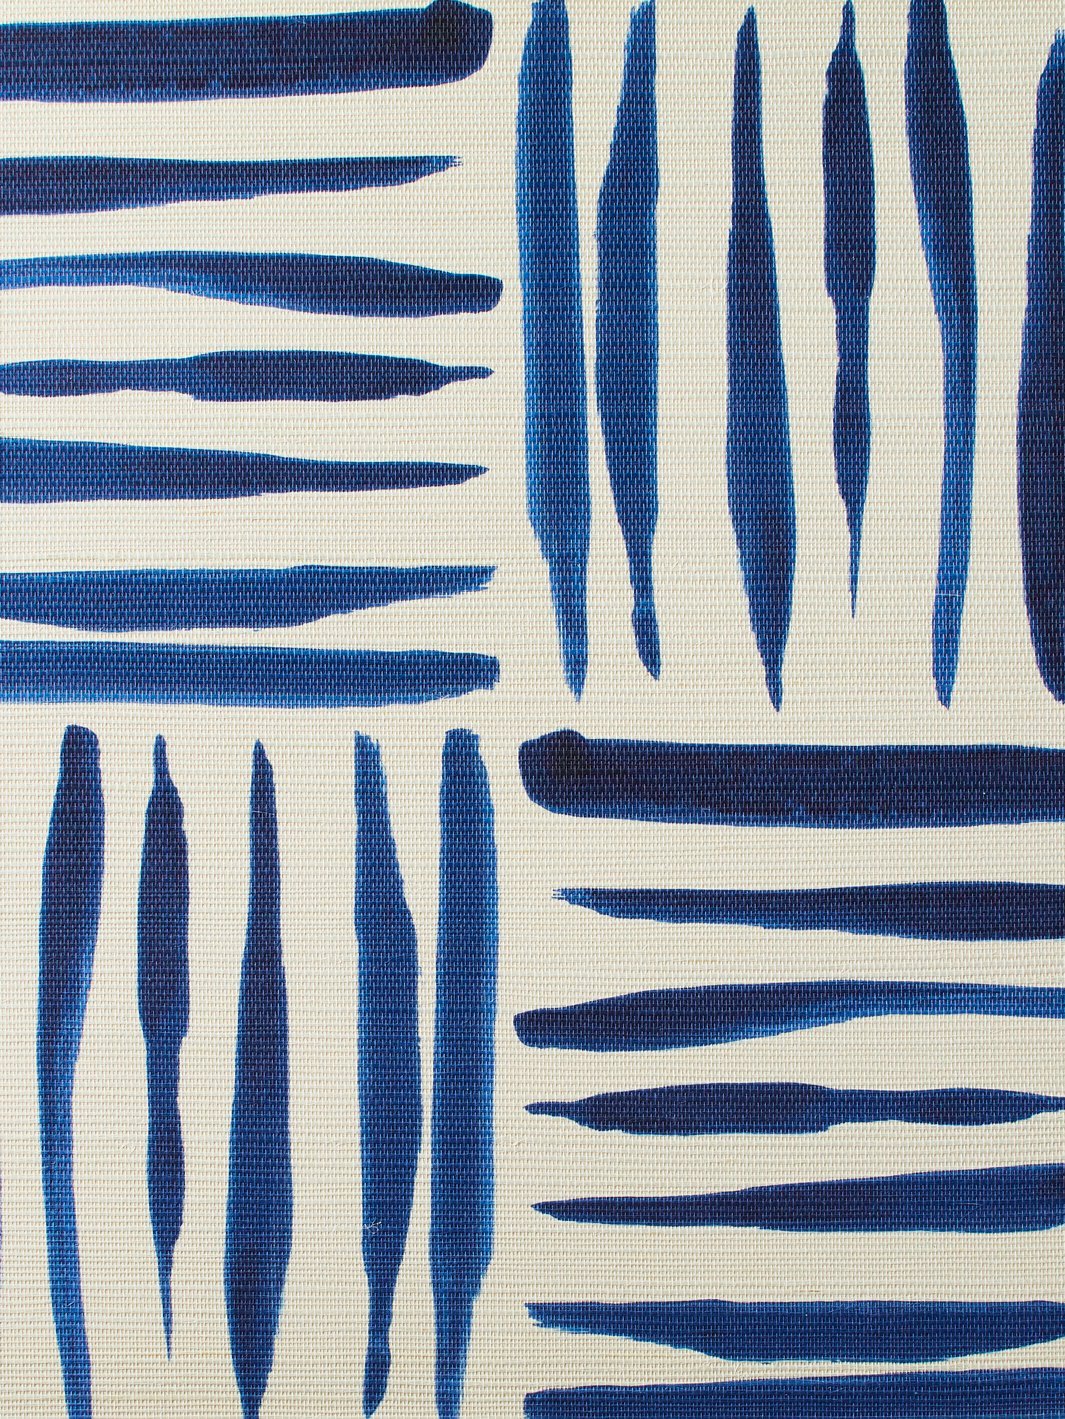 'Watercolor Weave Small' Grasscloth' Wallpaper by Wallshoppe - Blue